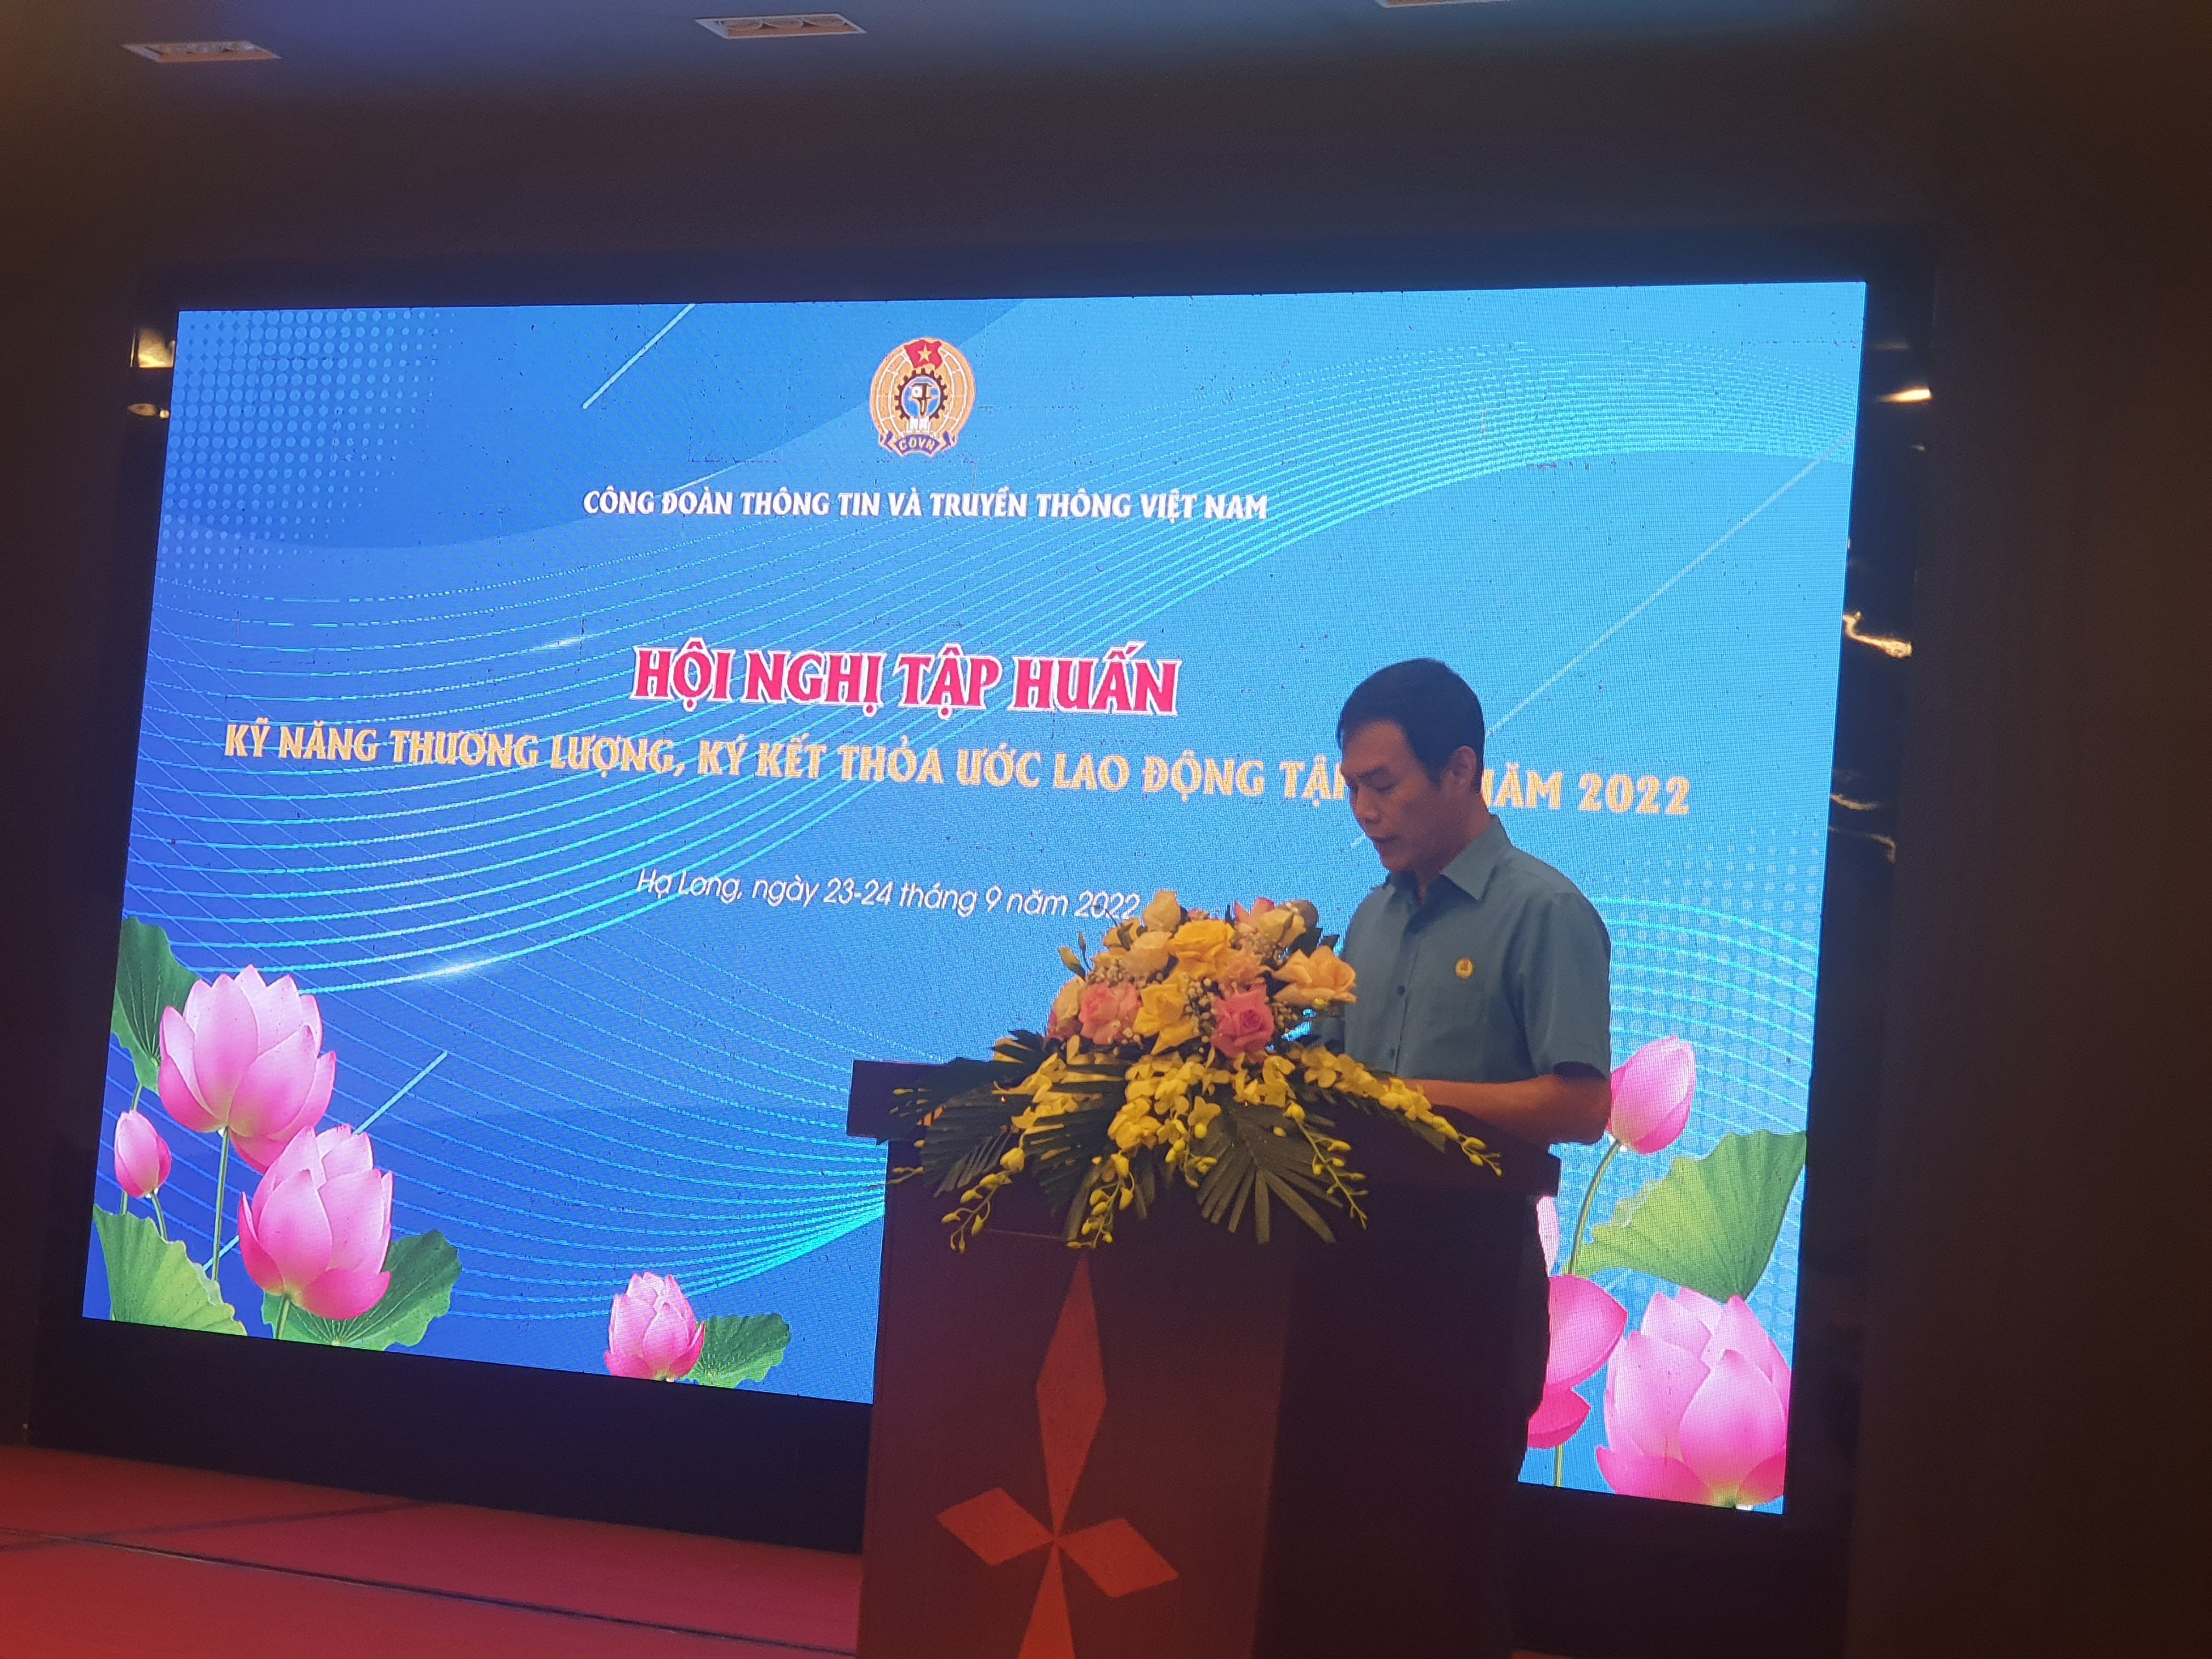 Công đoàn Thông tin và Truyền thông Việt Nam tổ chức Hội nghị tập huấn  kỹ năng thương lượng, ký kết thỏa ước lao động tập thể năm 2022